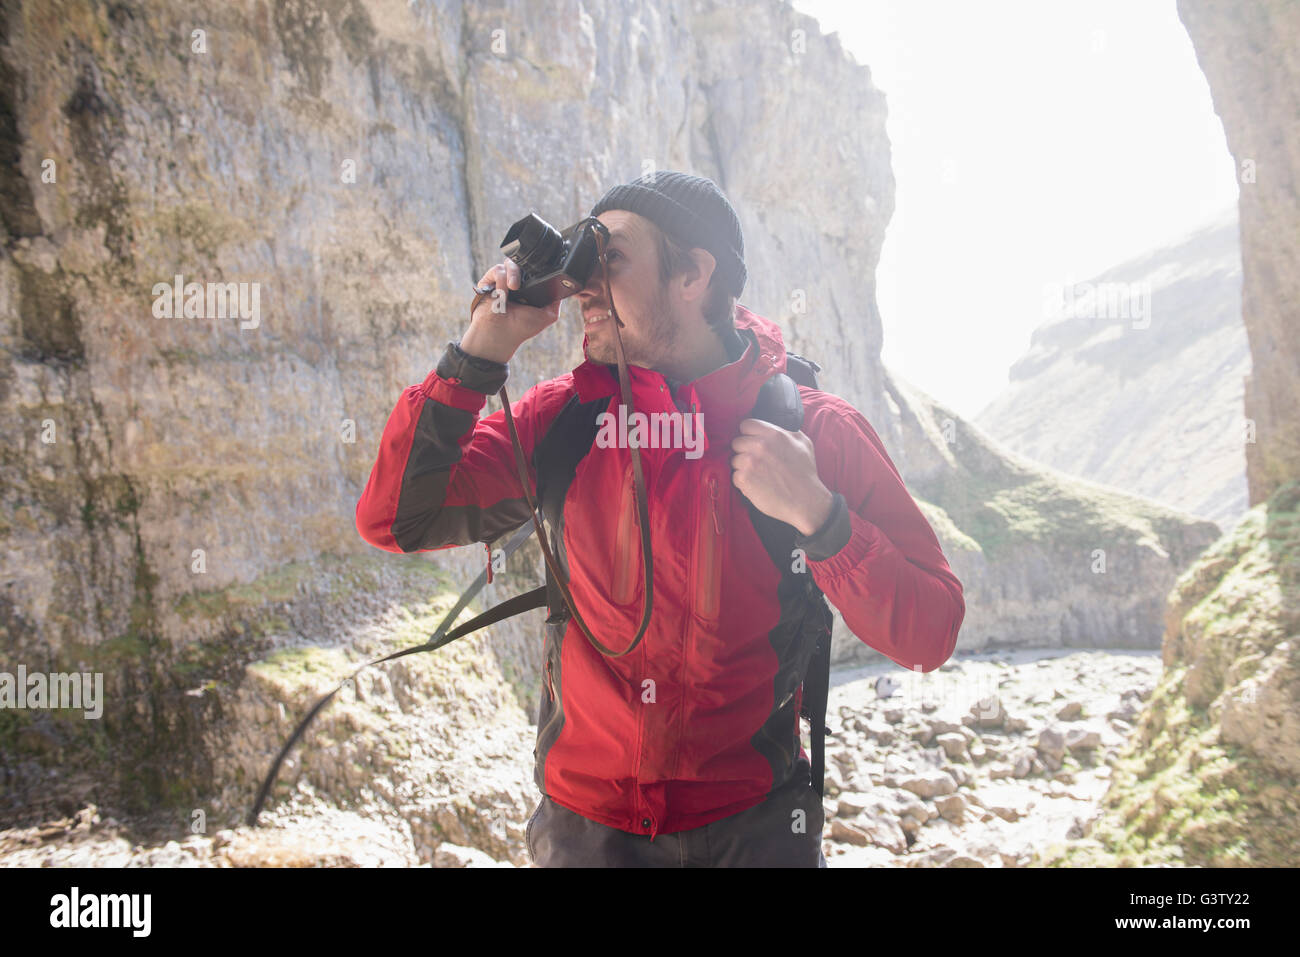 L'alpiniste escalade sur les rochers, de prendre des photographies dans un terrain accidenté. Banque D'Images